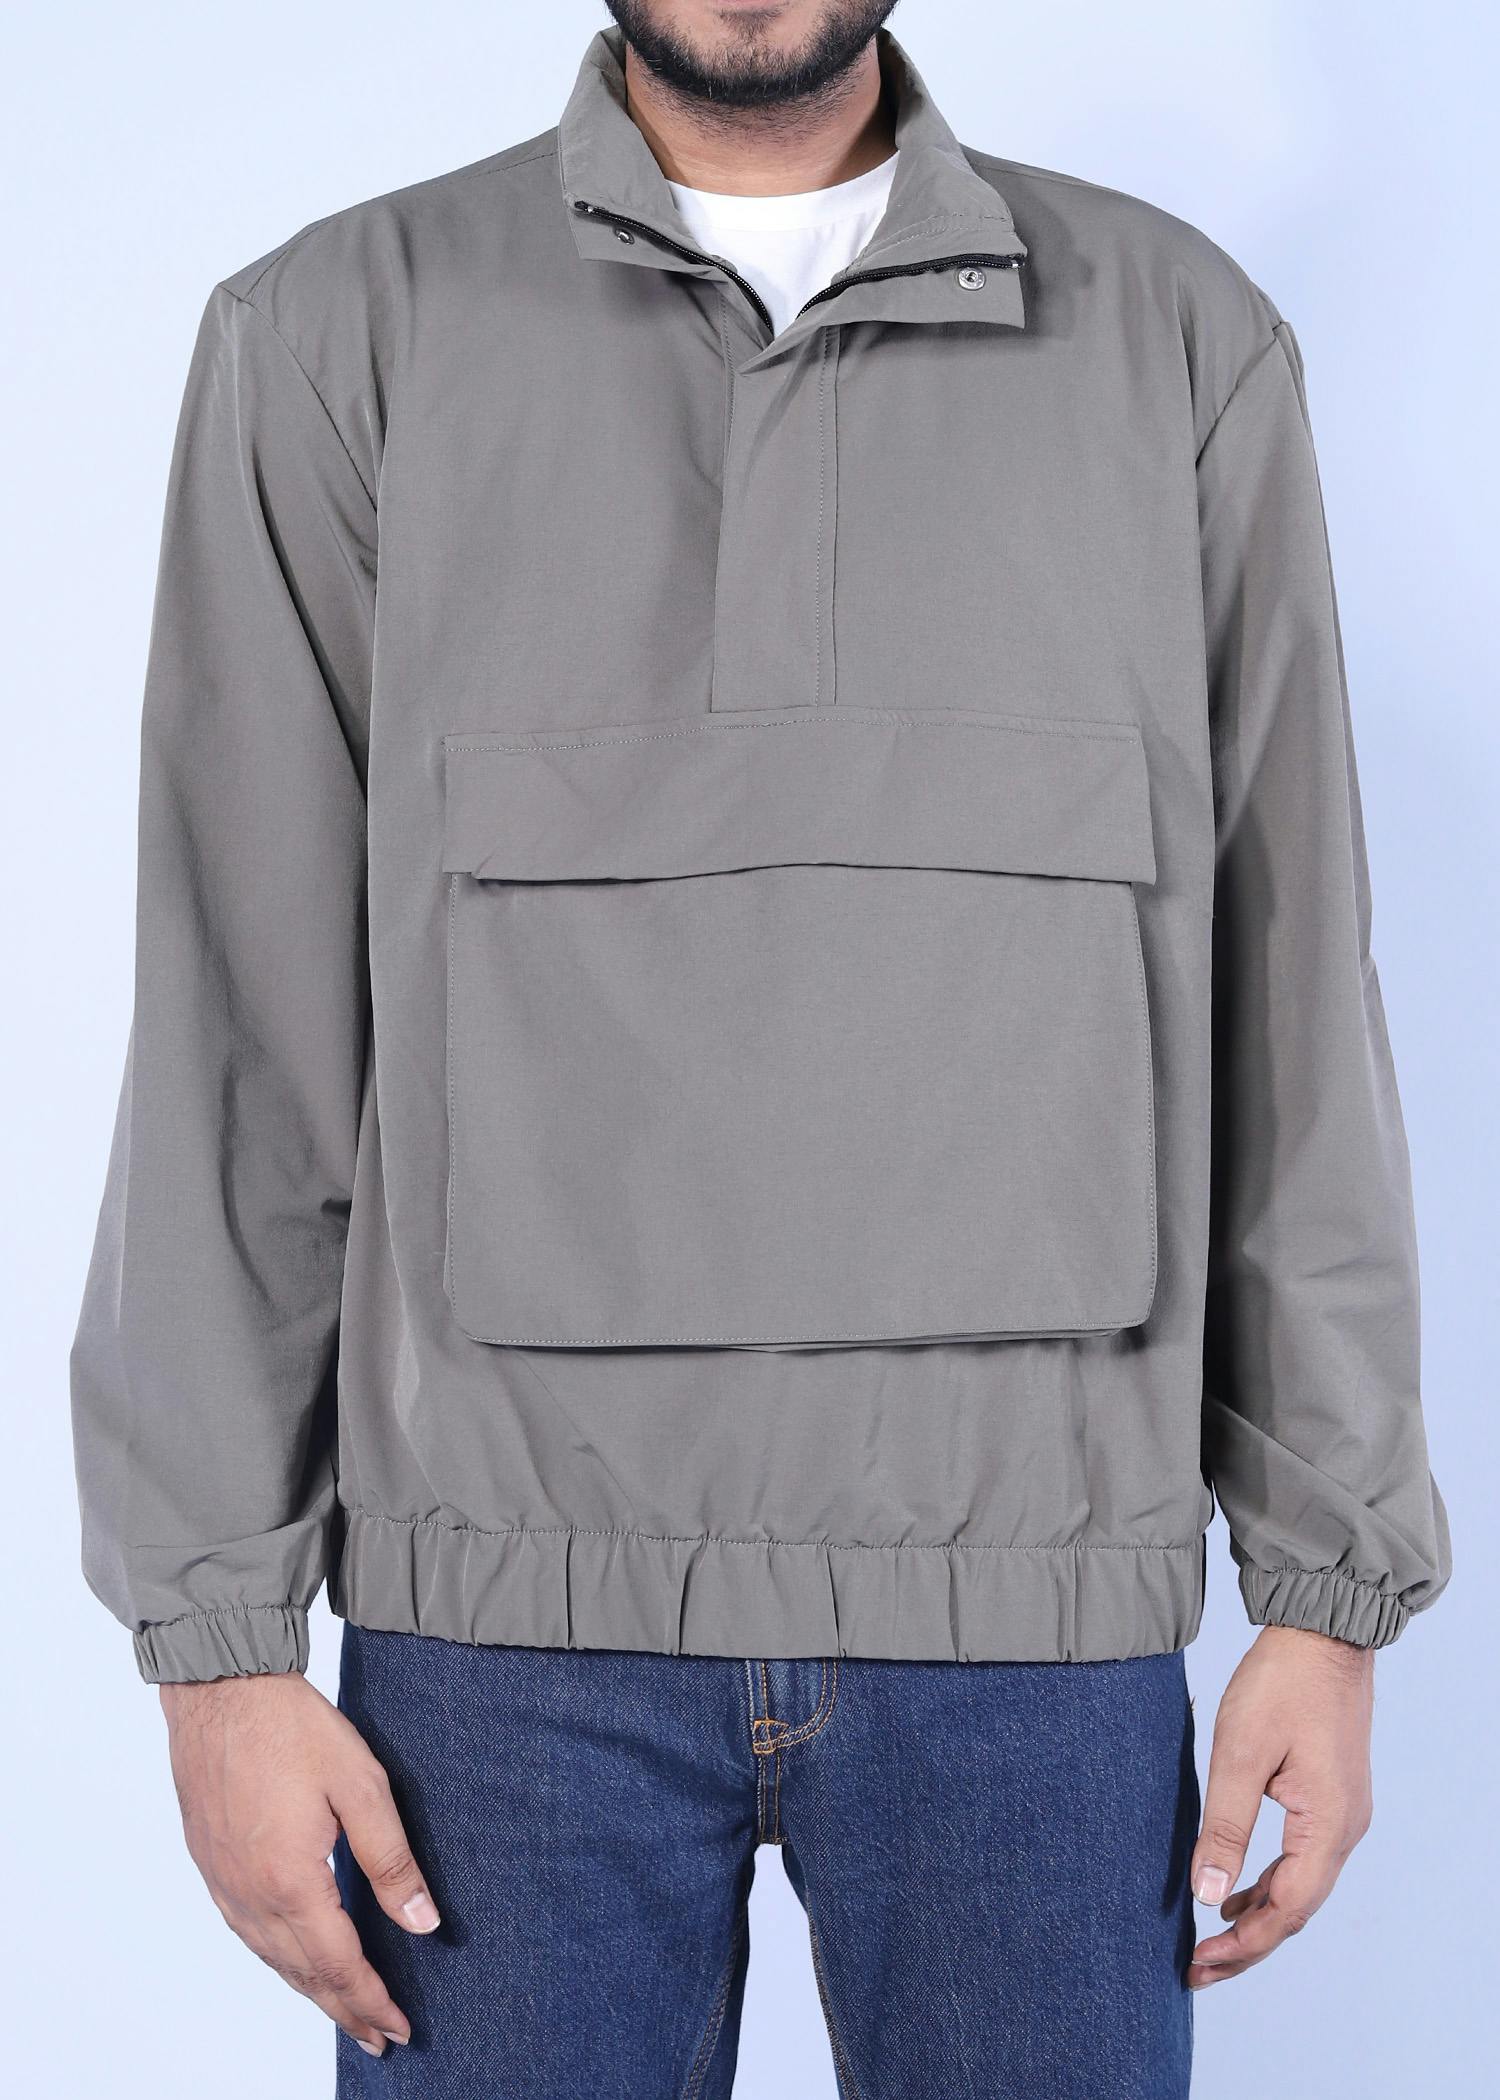 drongo jacket khaki color half front view